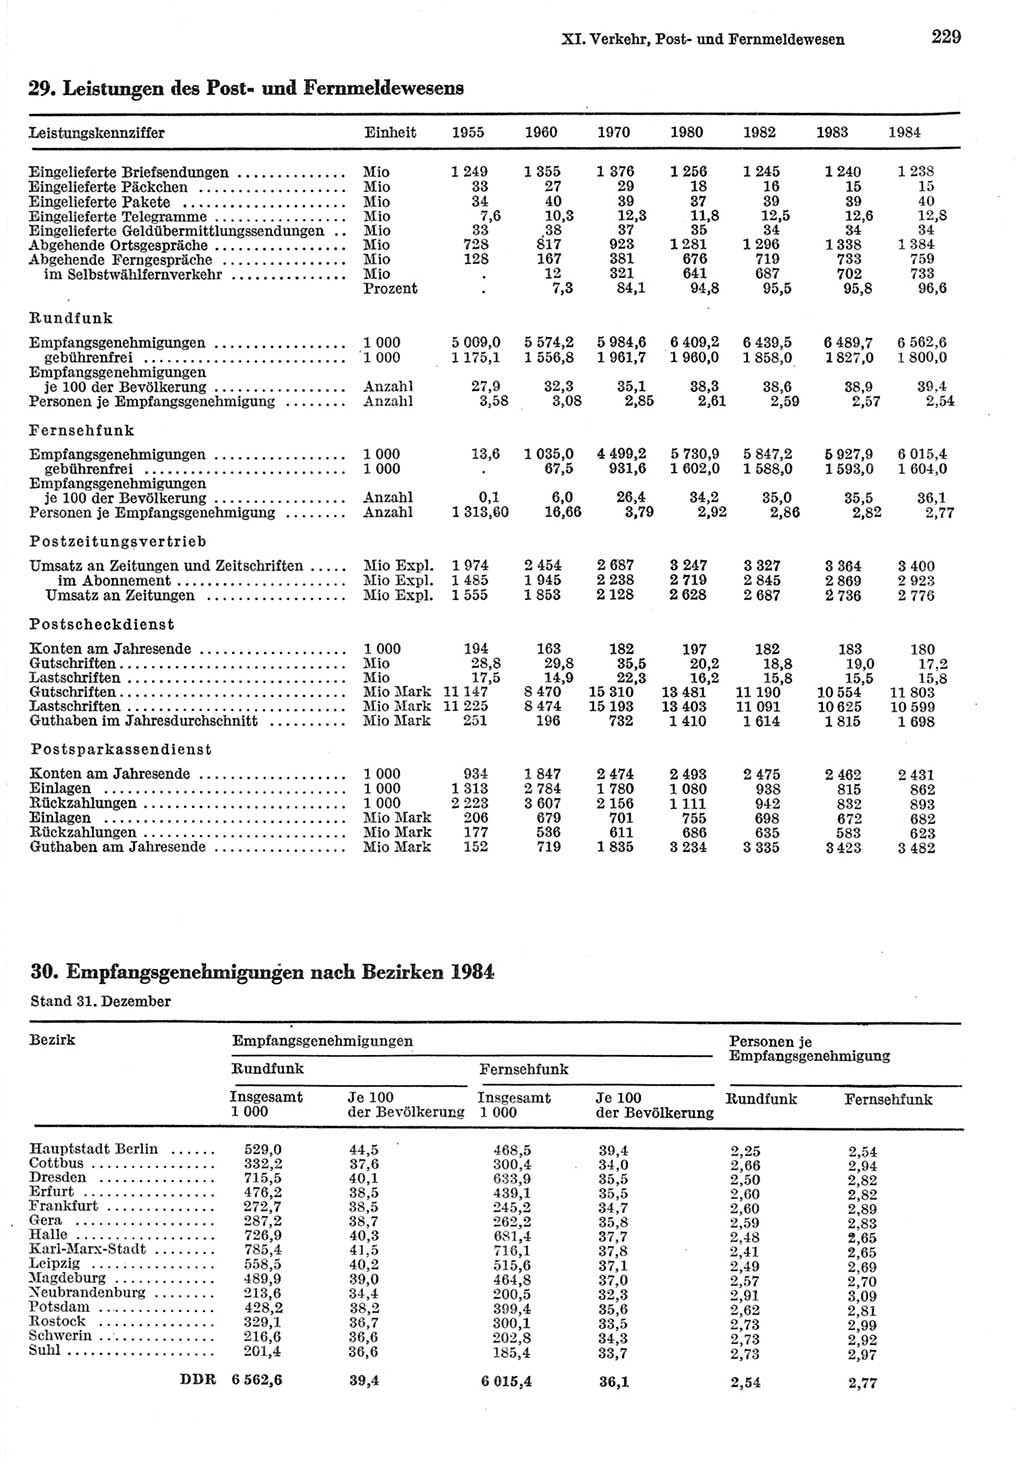 Statistisches Jahrbuch der Deutschen Demokratischen Republik (DDR) 1985, Seite 229 (Stat. Jb. DDR 1985, S. 229)